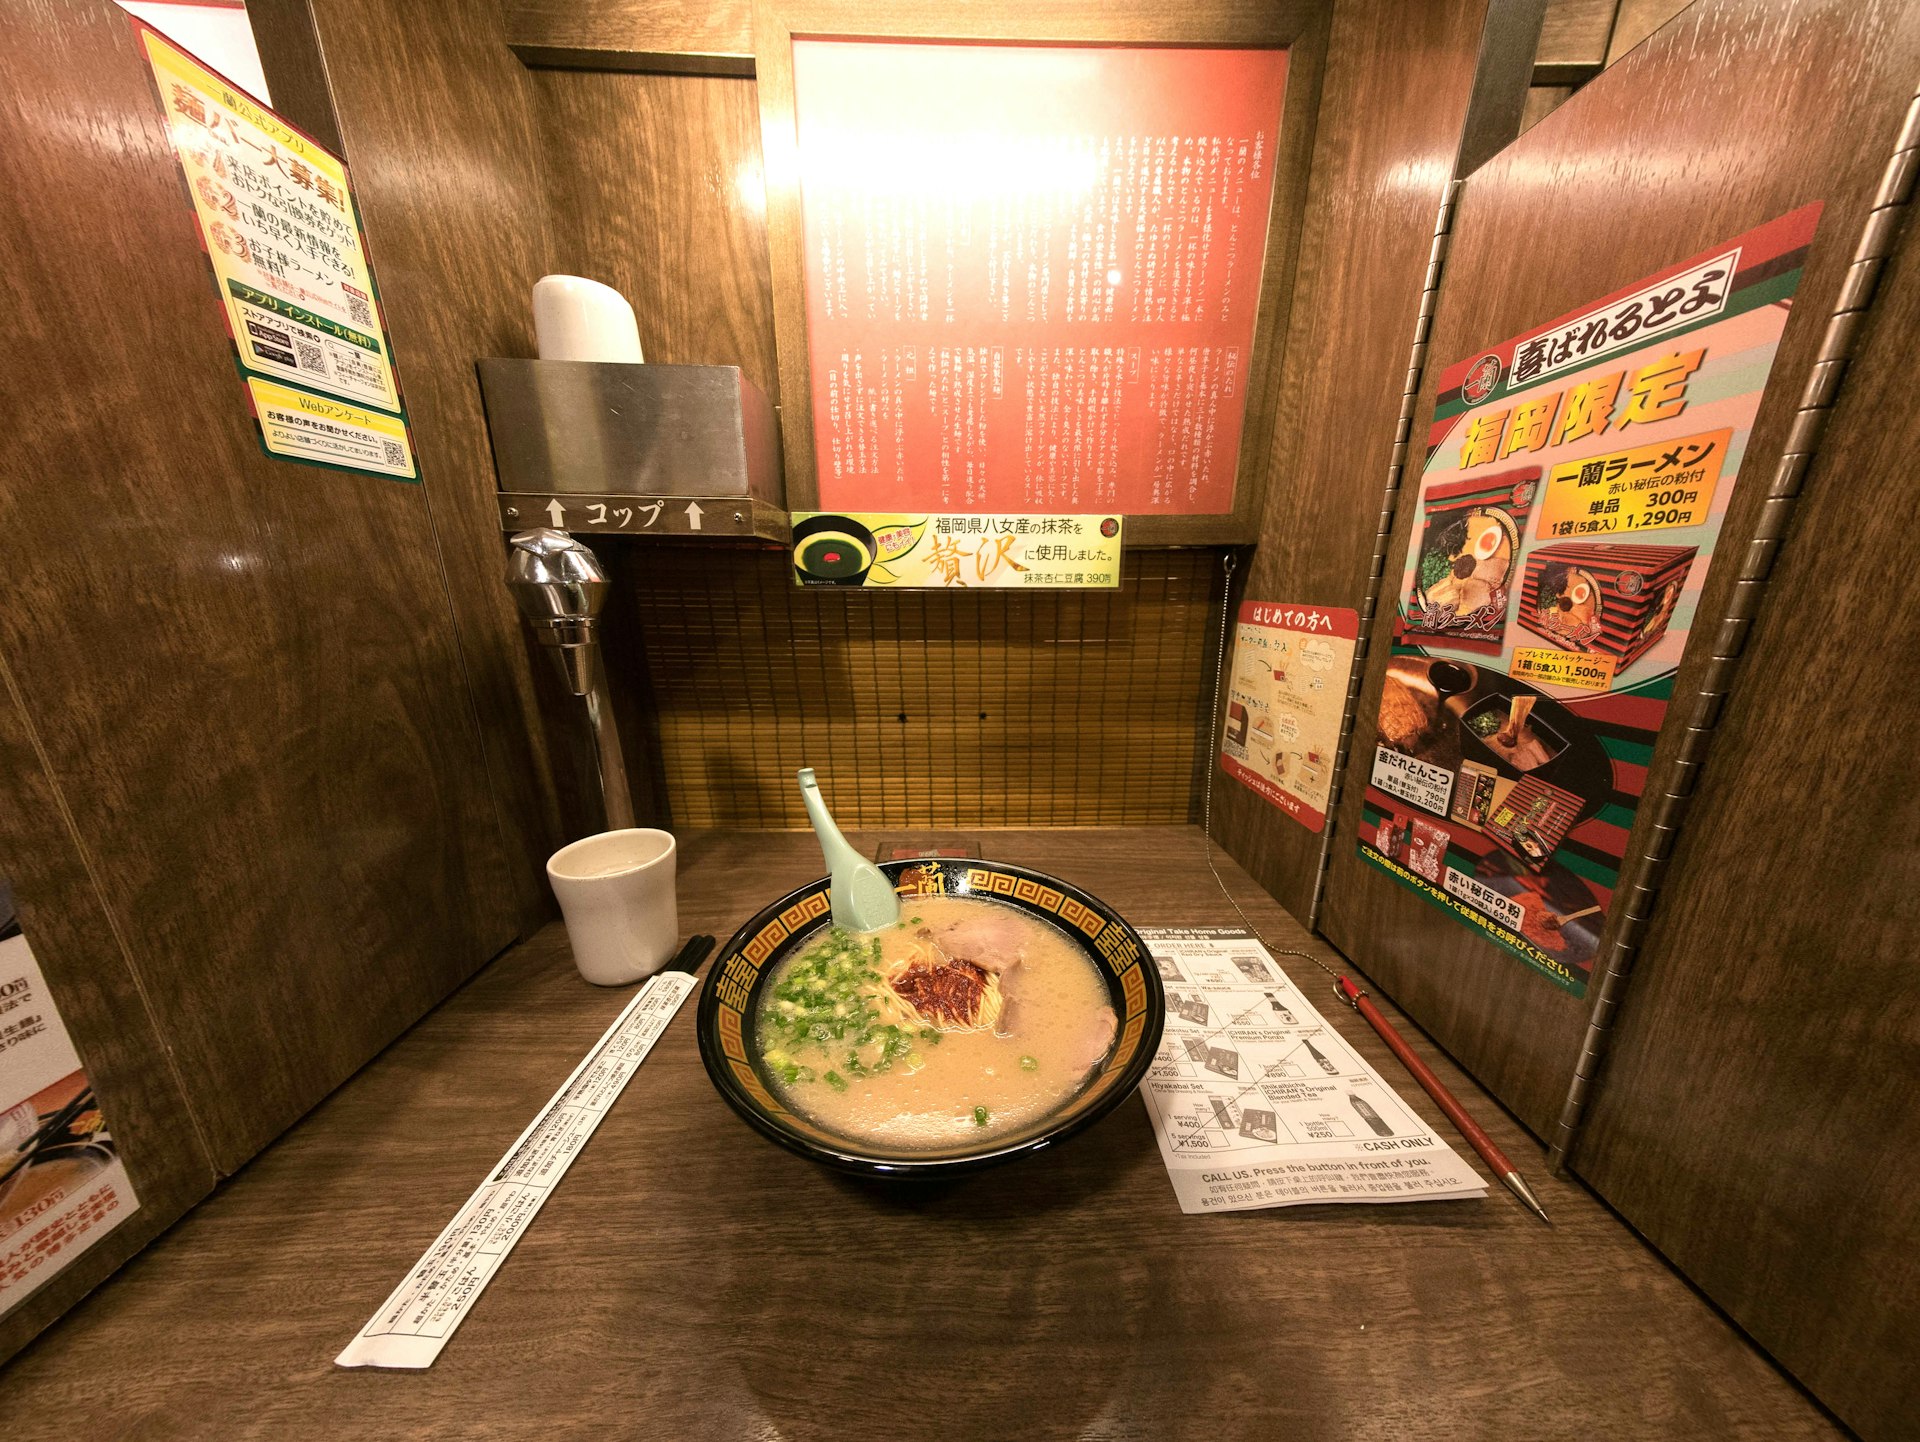 A bowl of ramen in a private booth at Ichiran, Hakata railway station, Fukuoka, Japan